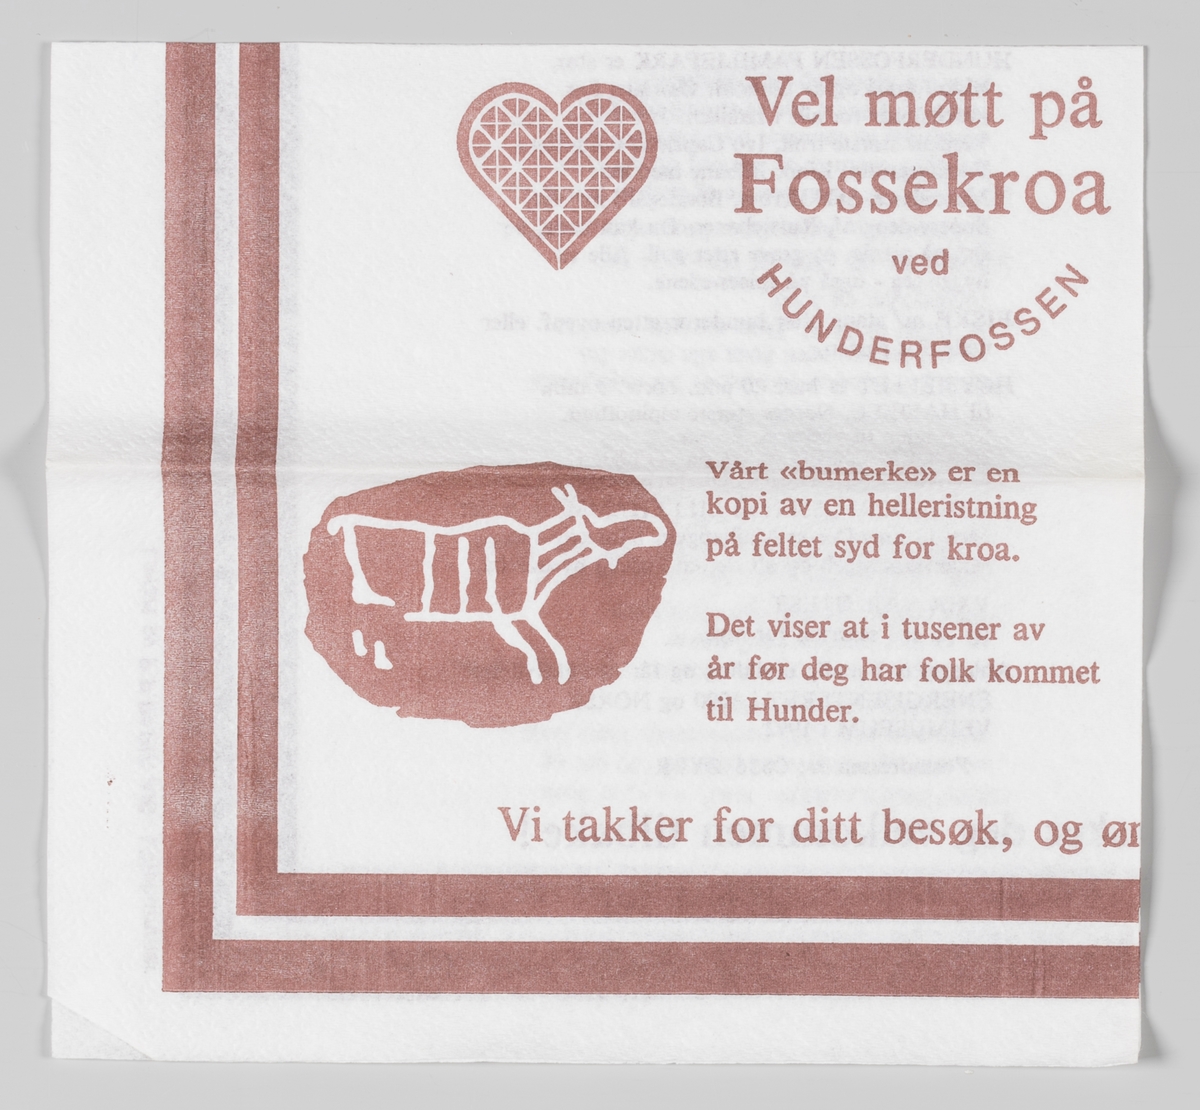 Et hjerte og en helleristning med et reinmotiv og reklametekst for Fossekroa ved Hunderfossen.

Fossekroa ble etablert i 1962. Fossekroa ligger 400 m fra Hunderfossen Familiepark, 100 m fra Barnas Gård Hunderfossen og 500 m fra Norsk Vegmuseum.